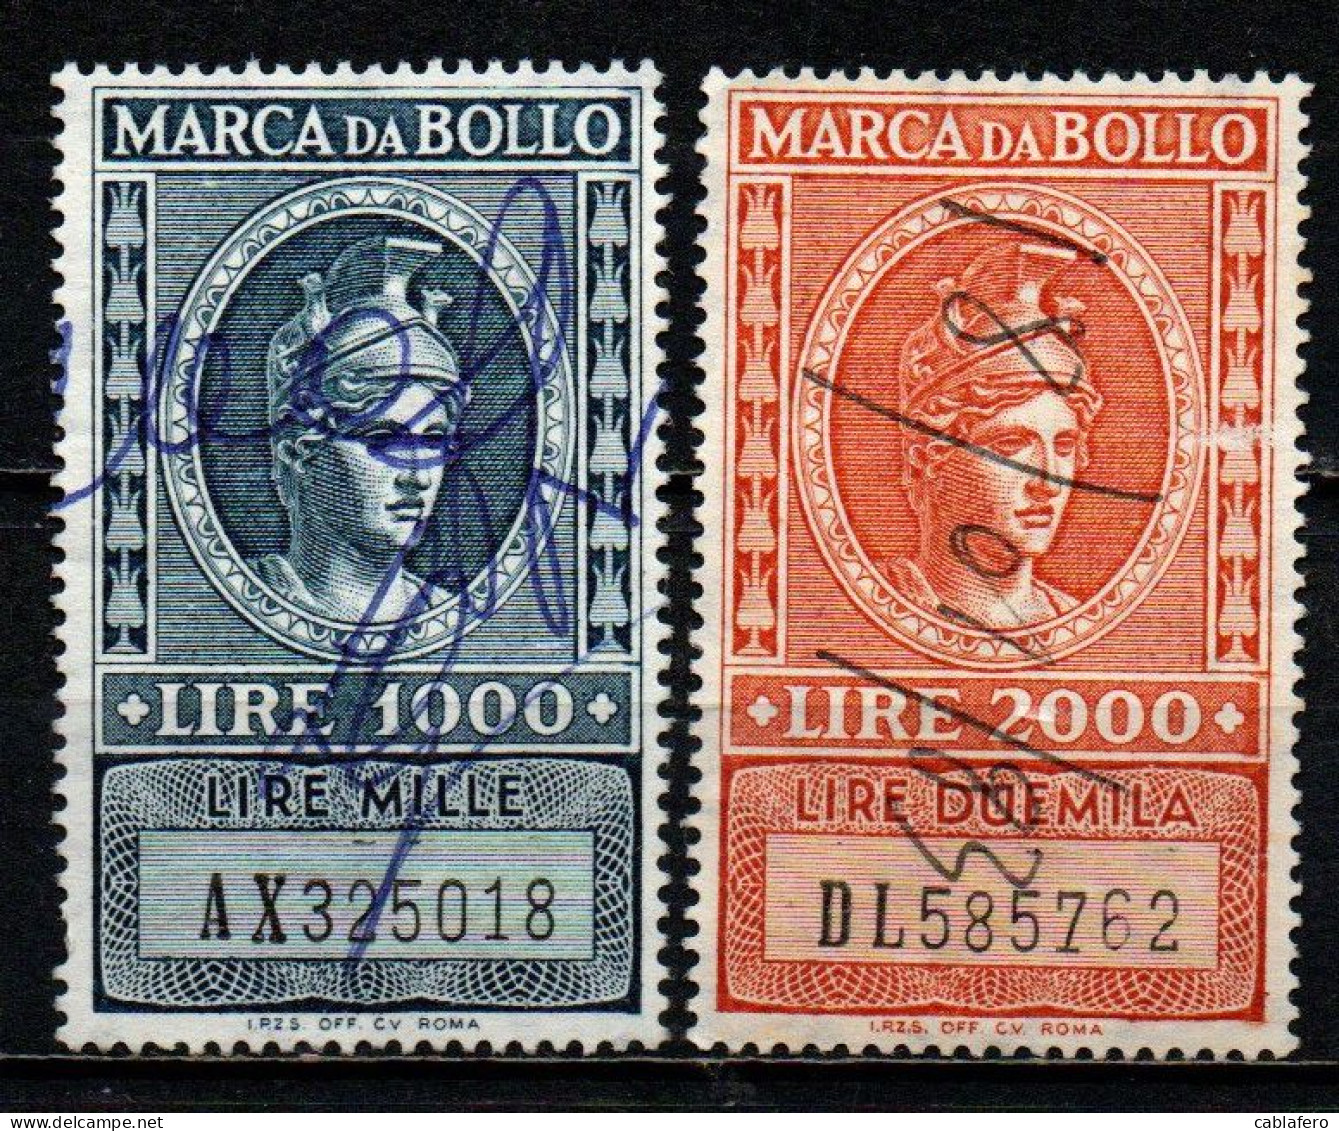 ITALIA REPUBBLICA - 1959 - MARCA DA BOLLO A TASSA FISSA - FILIGRANA STELLA - NUOVO FORMATO - USATI - Fiscaux